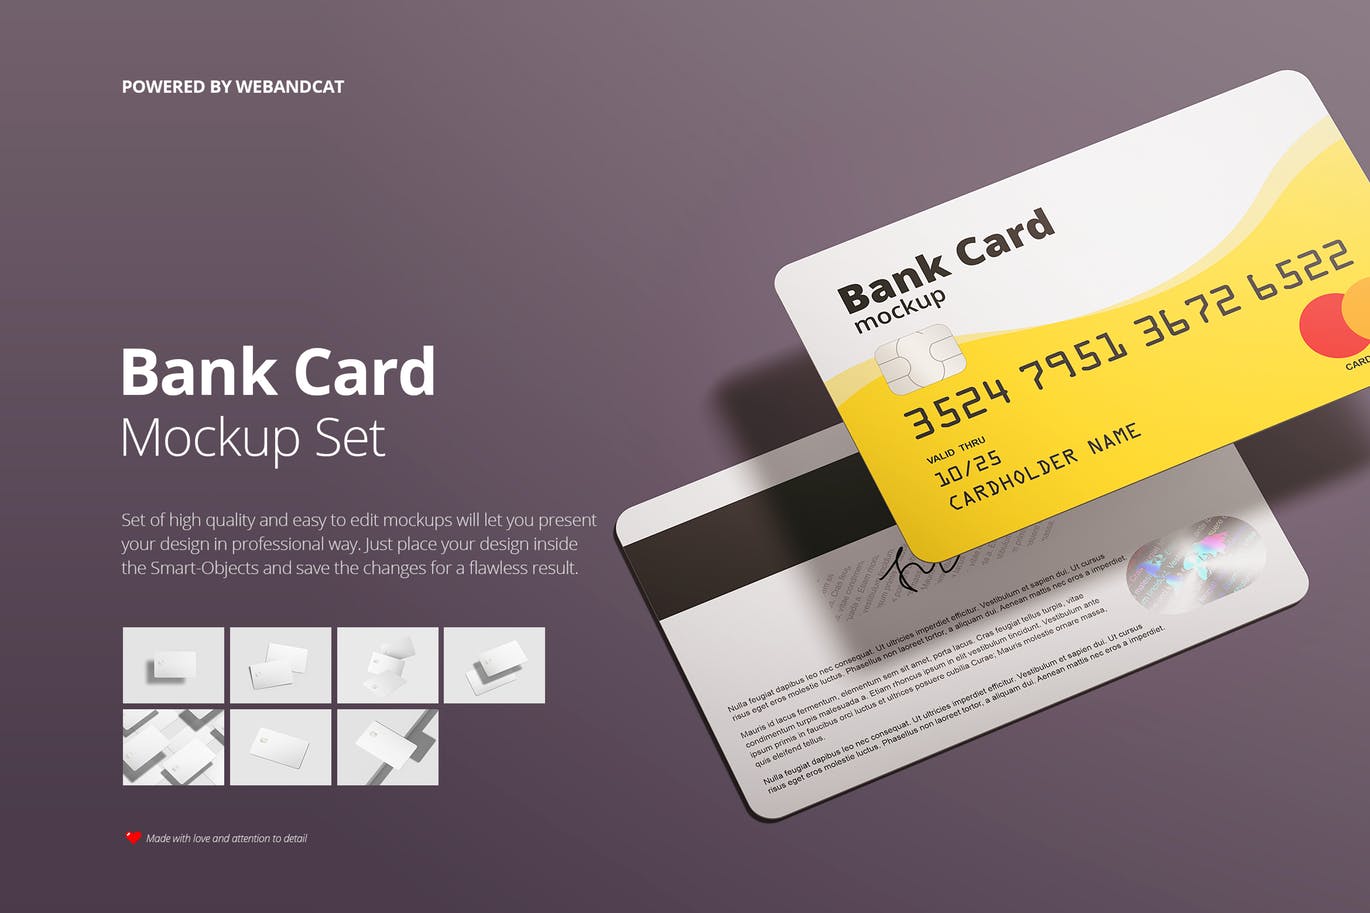 银行卡/会员卡版面设计效果图大洋岛精选模板 Bank / Membership Card Mockup插图